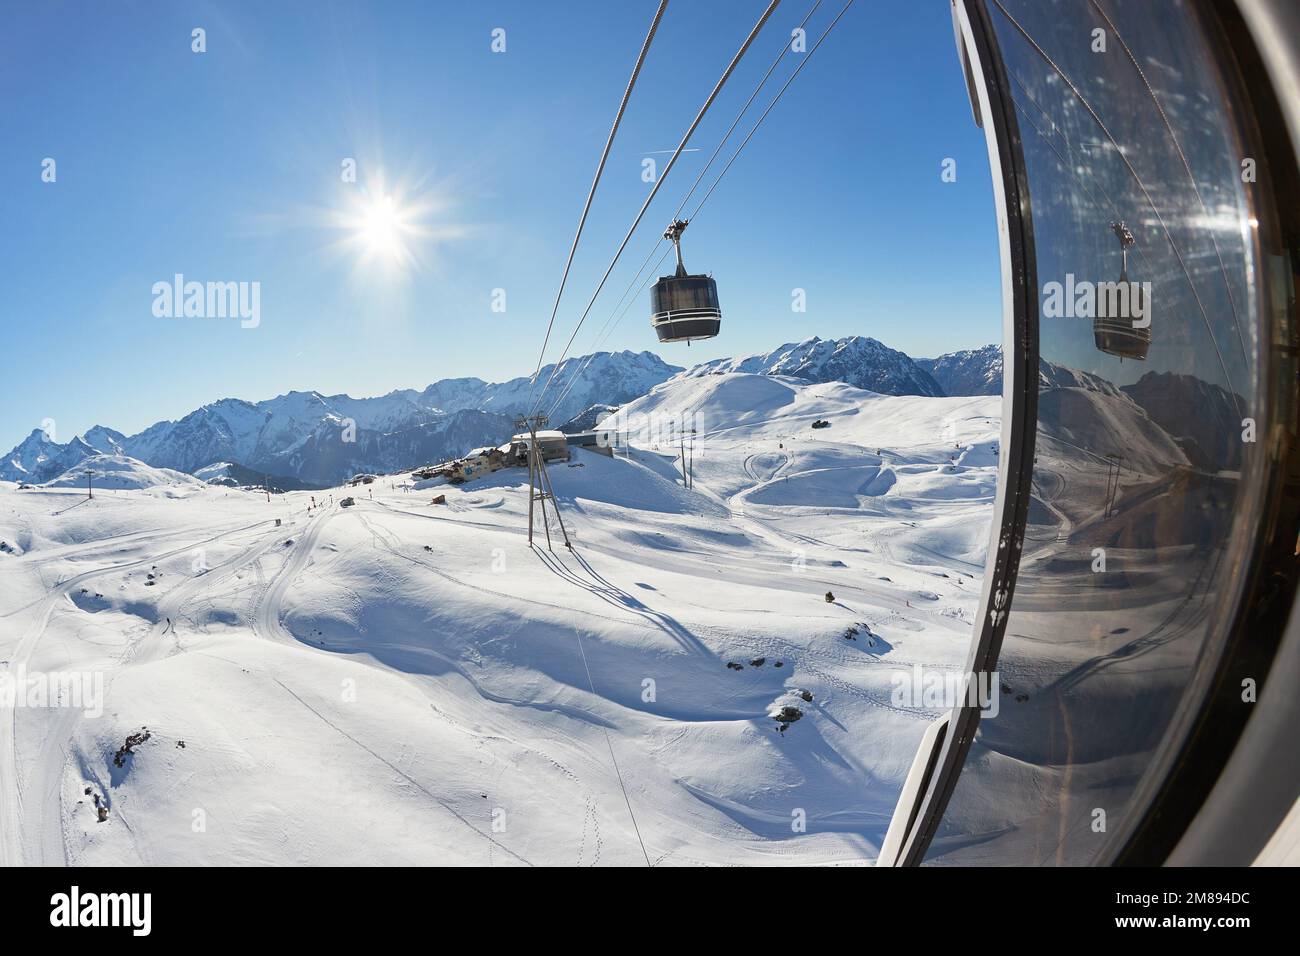 Les cabines de remontée mécanique montent sur une station de ski Banque D'Images